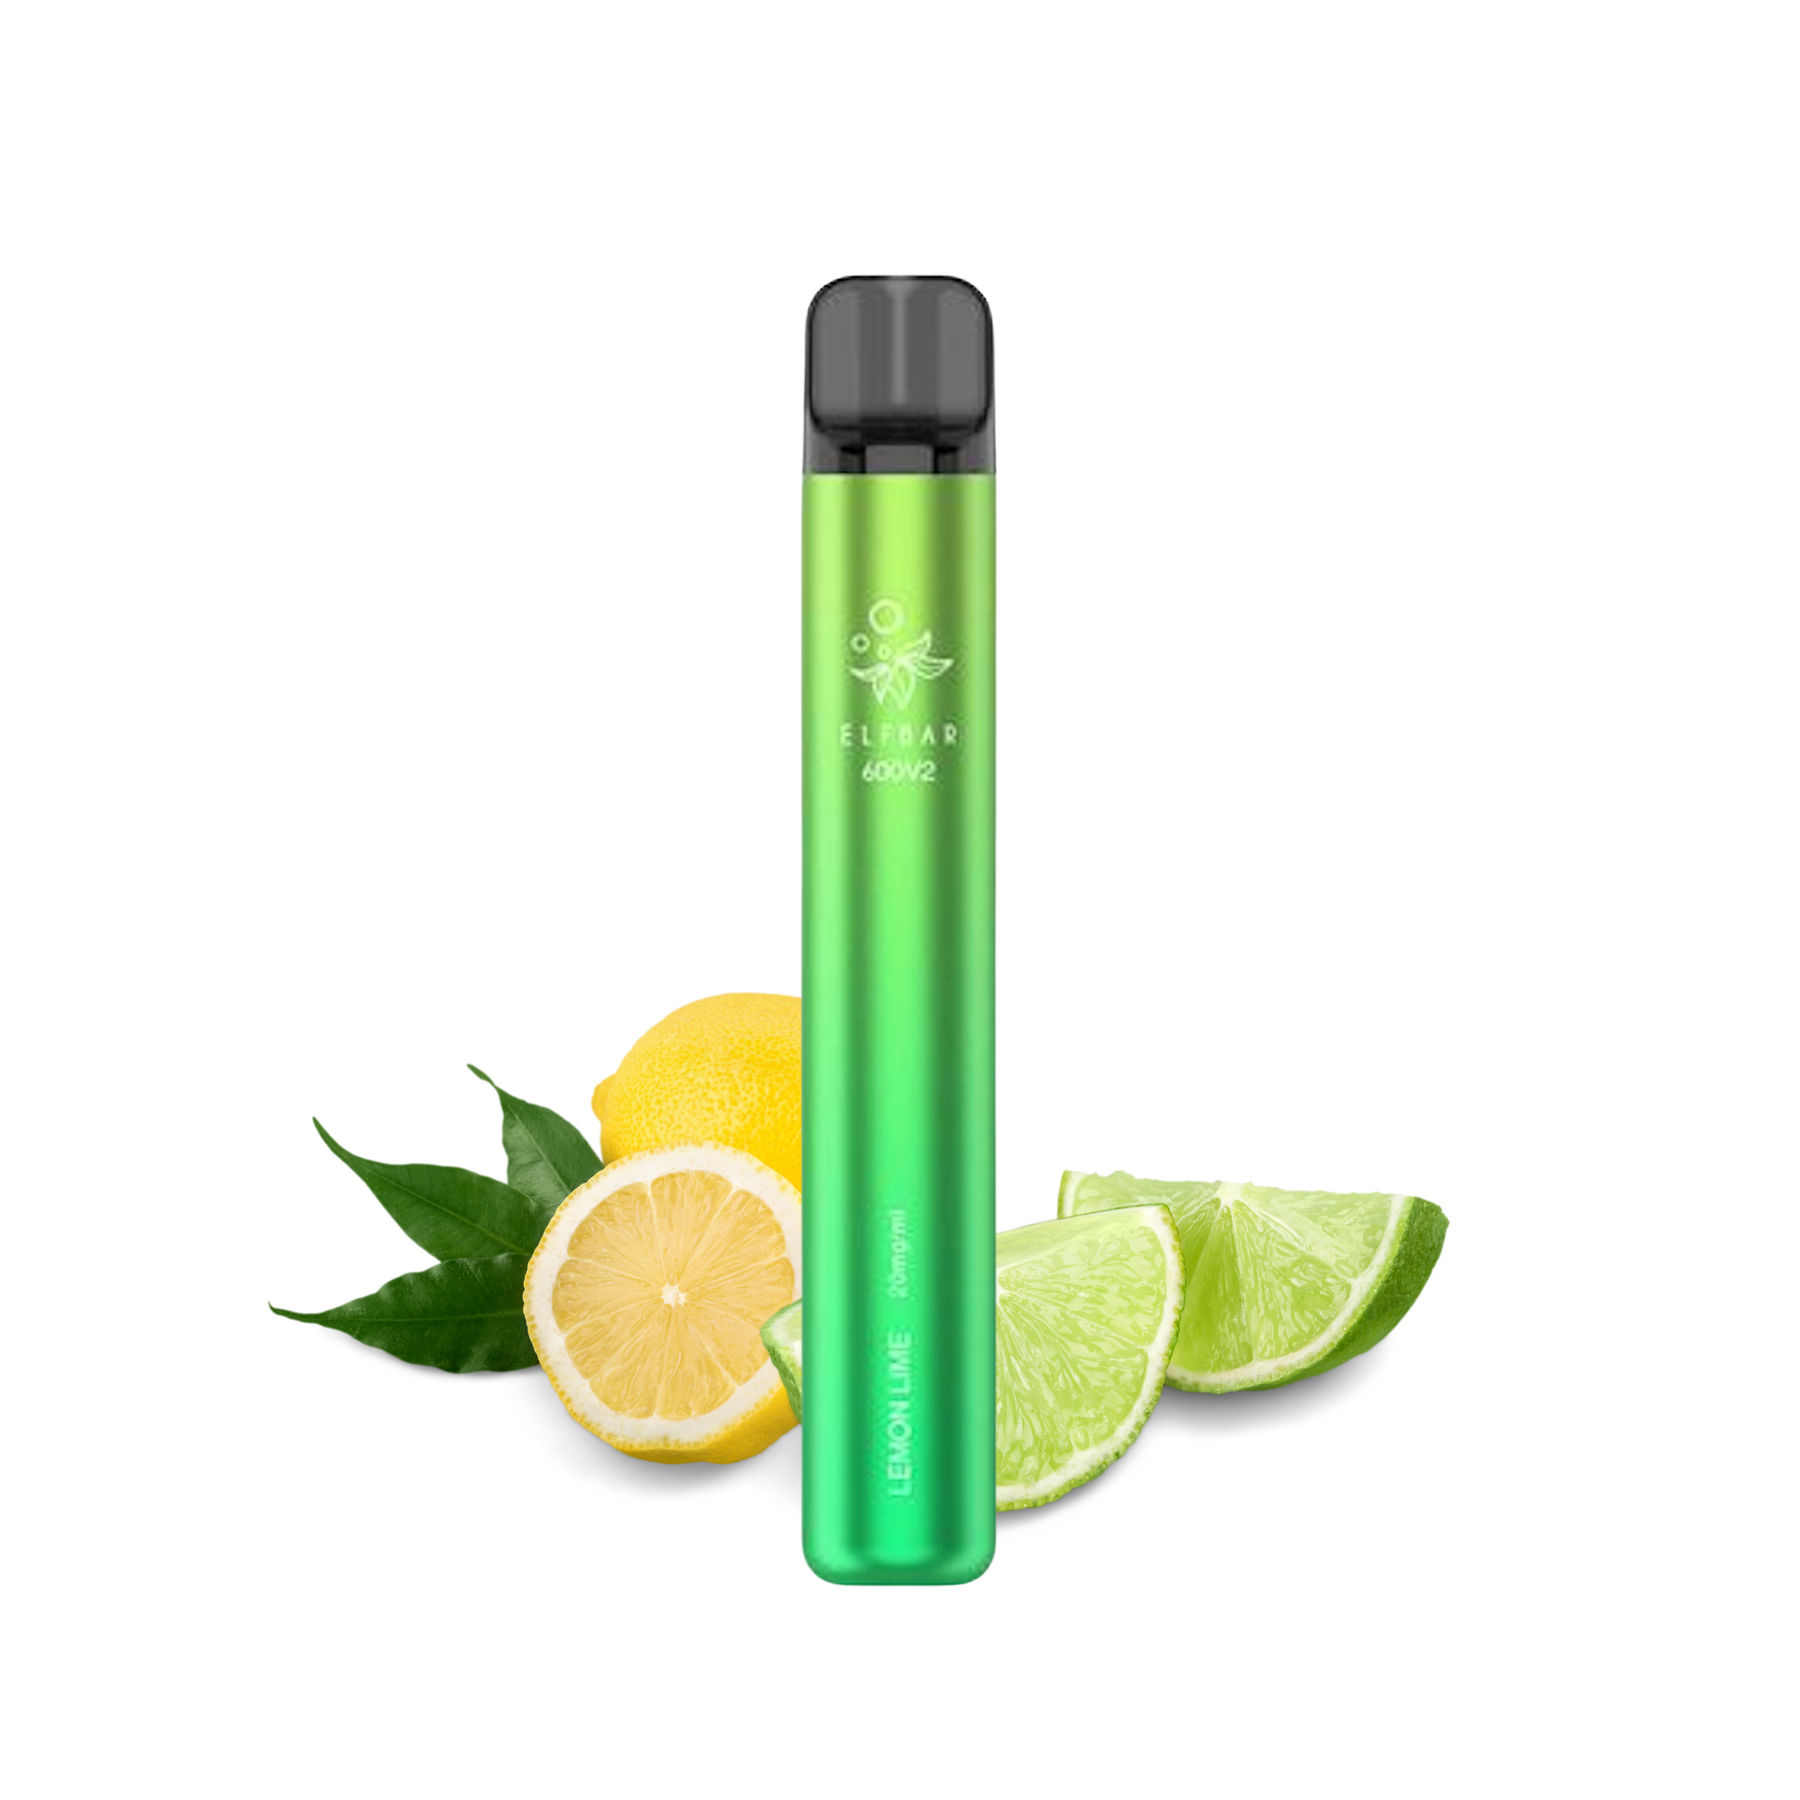 Elf Bar 600 V2 - Lemon & Lime